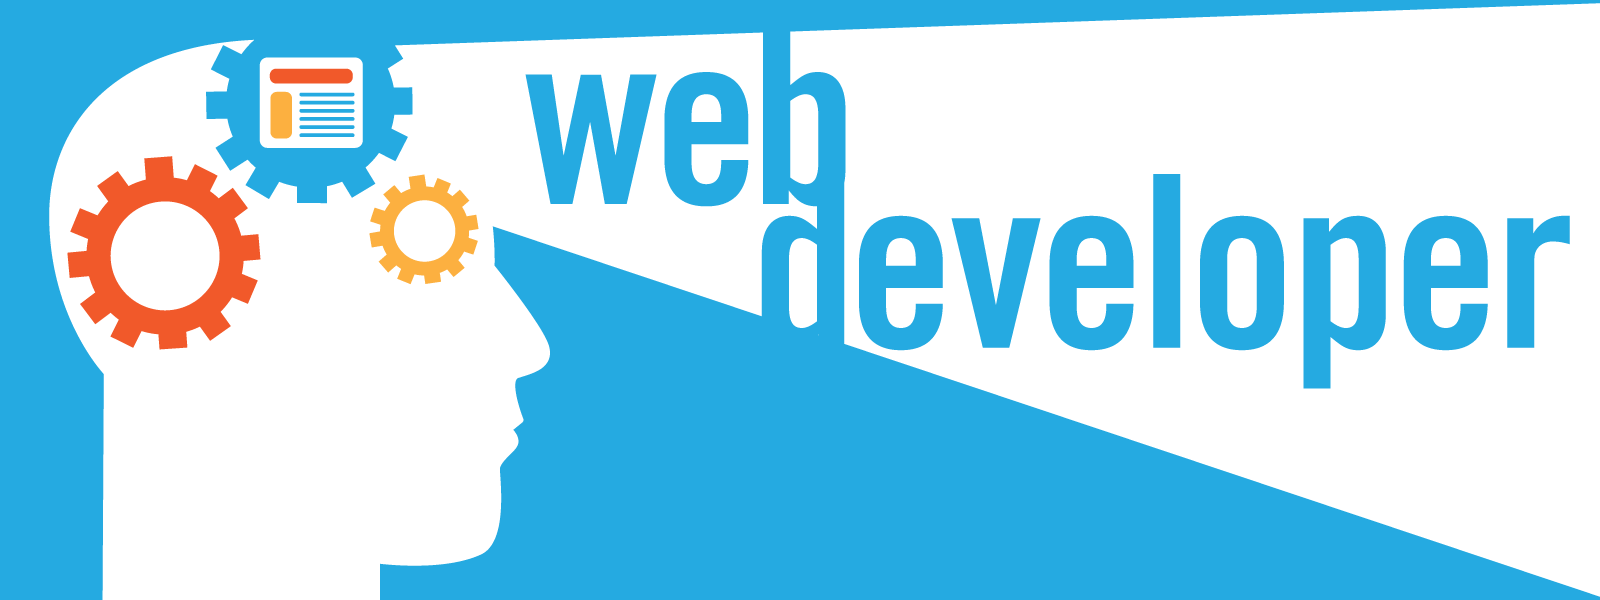 Carousel_Web_Developer